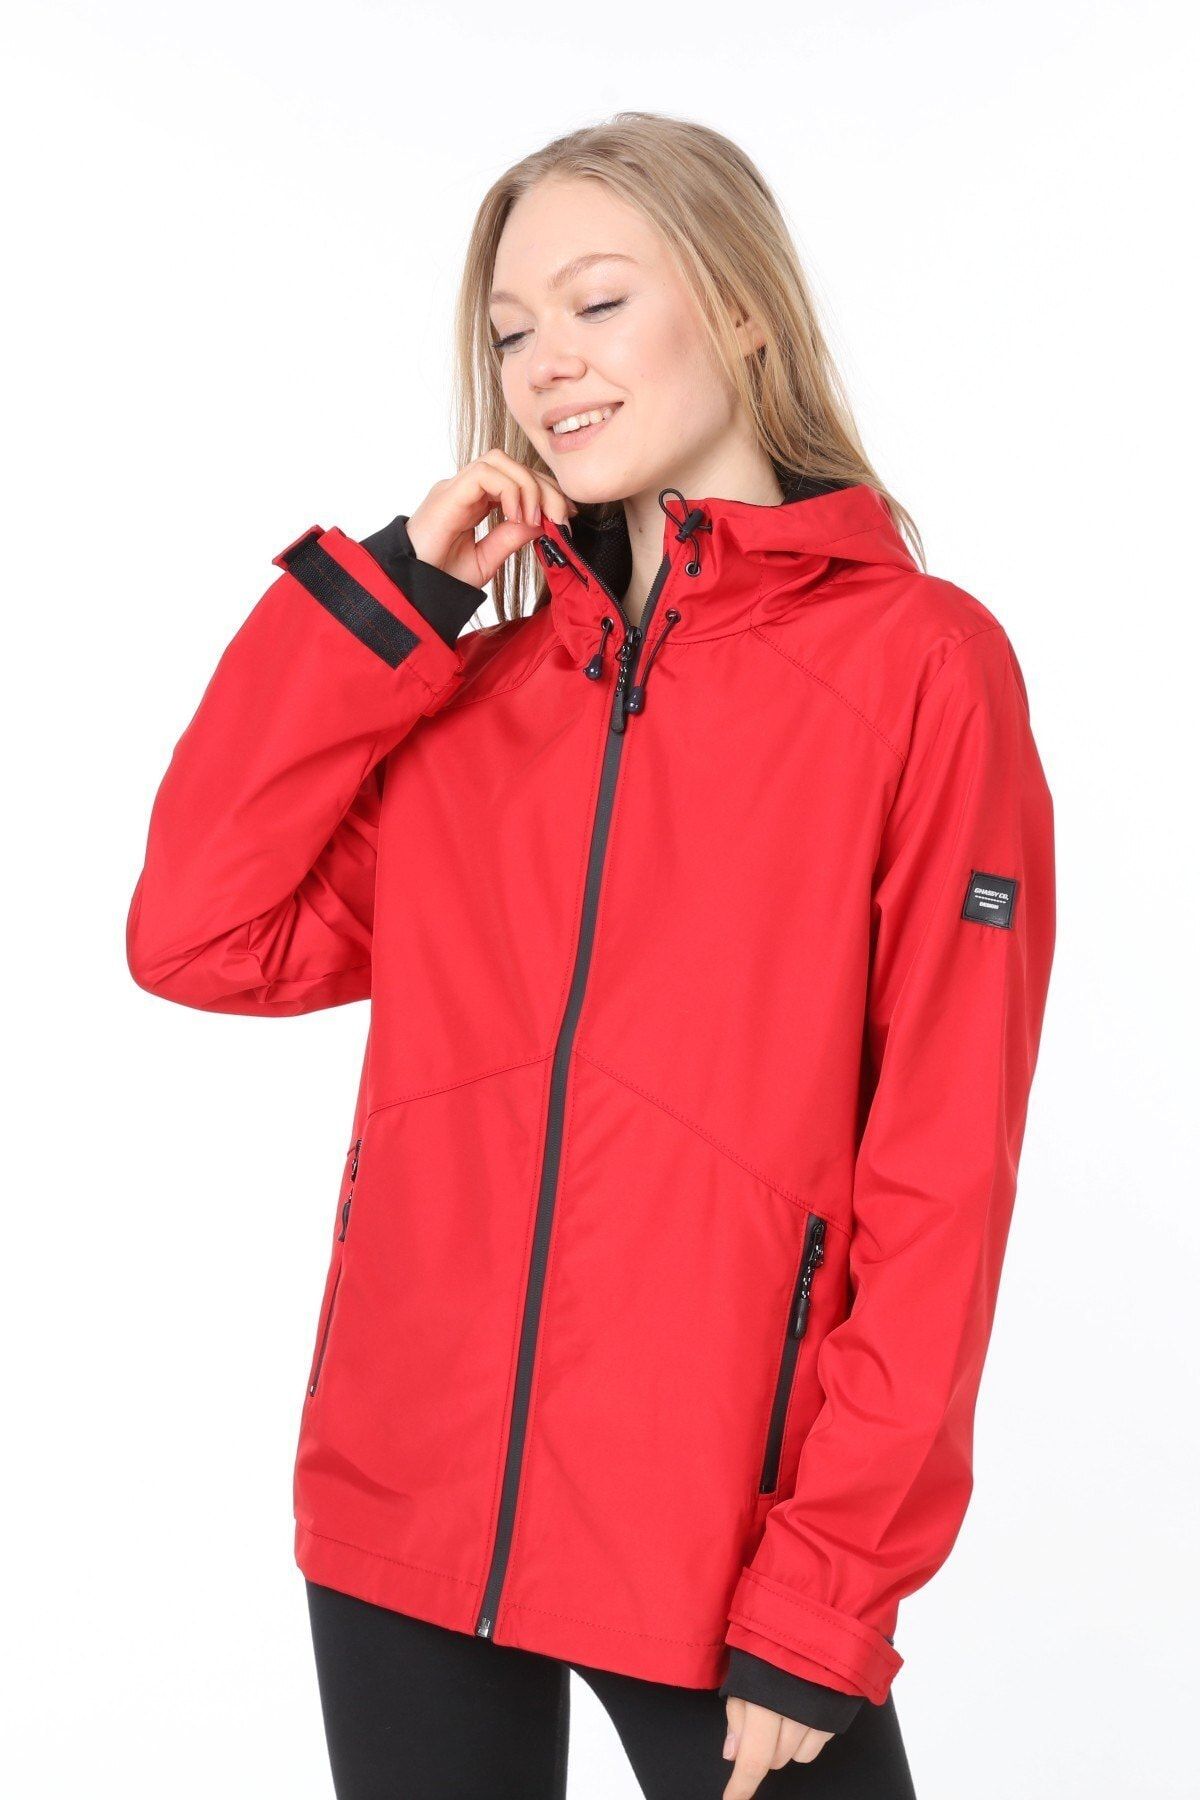 Ghassy Co Kadın Kırmızı  Rüzgarlık/yağmurluk Omuz Detaylı Mevsimlik Spor Ceket